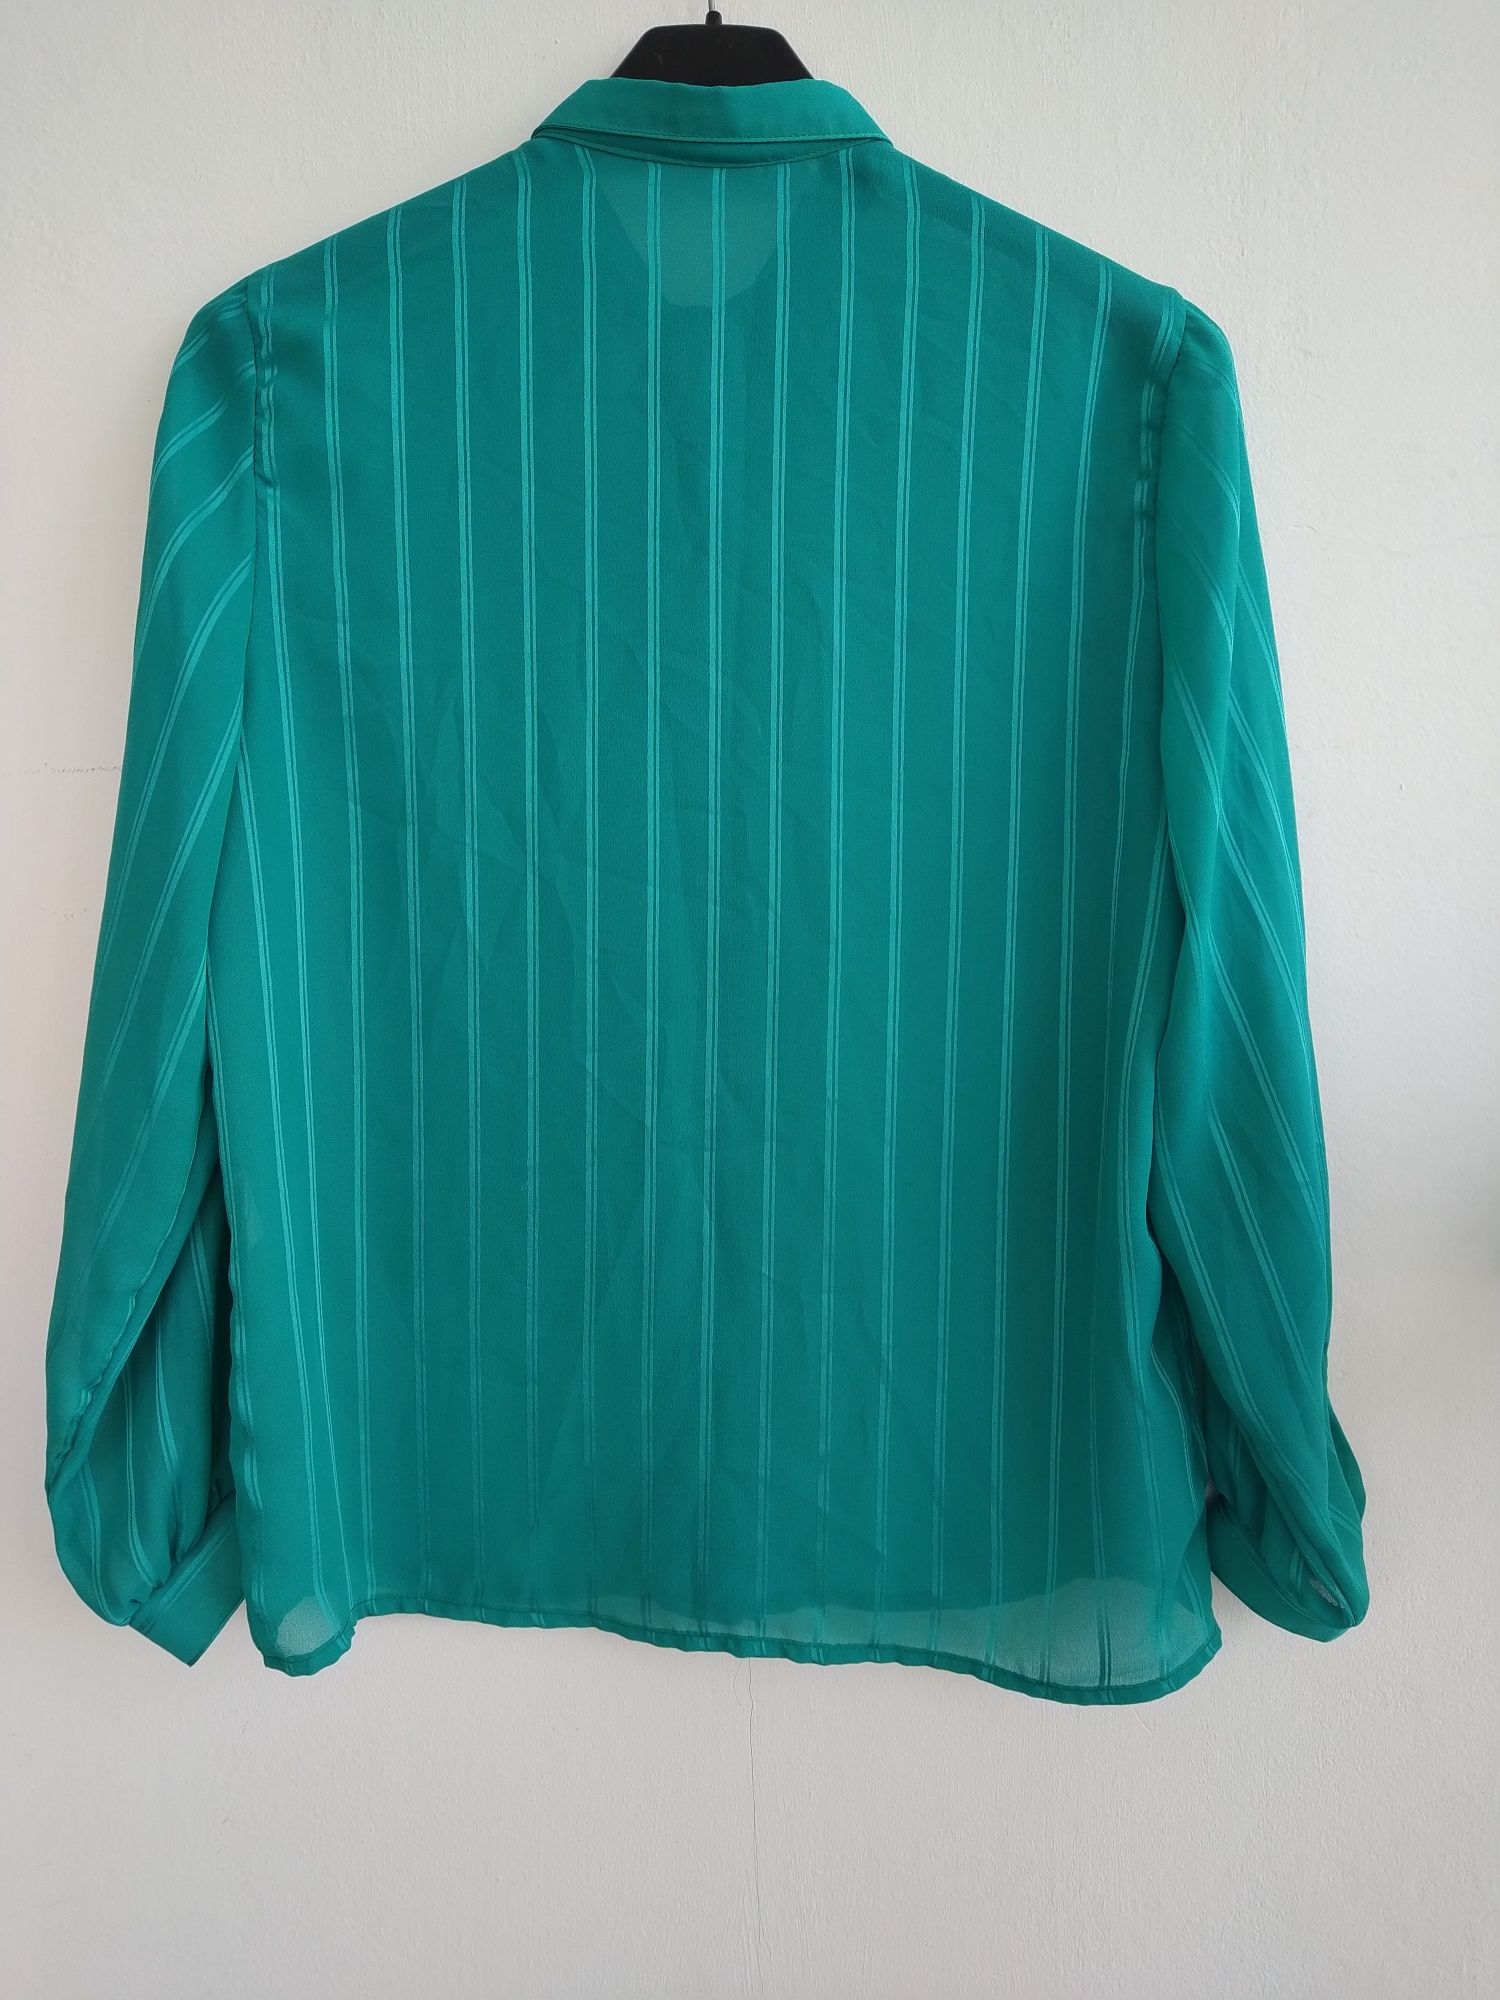 Blusa verde, riscas com brilho - Tamanho L/XL